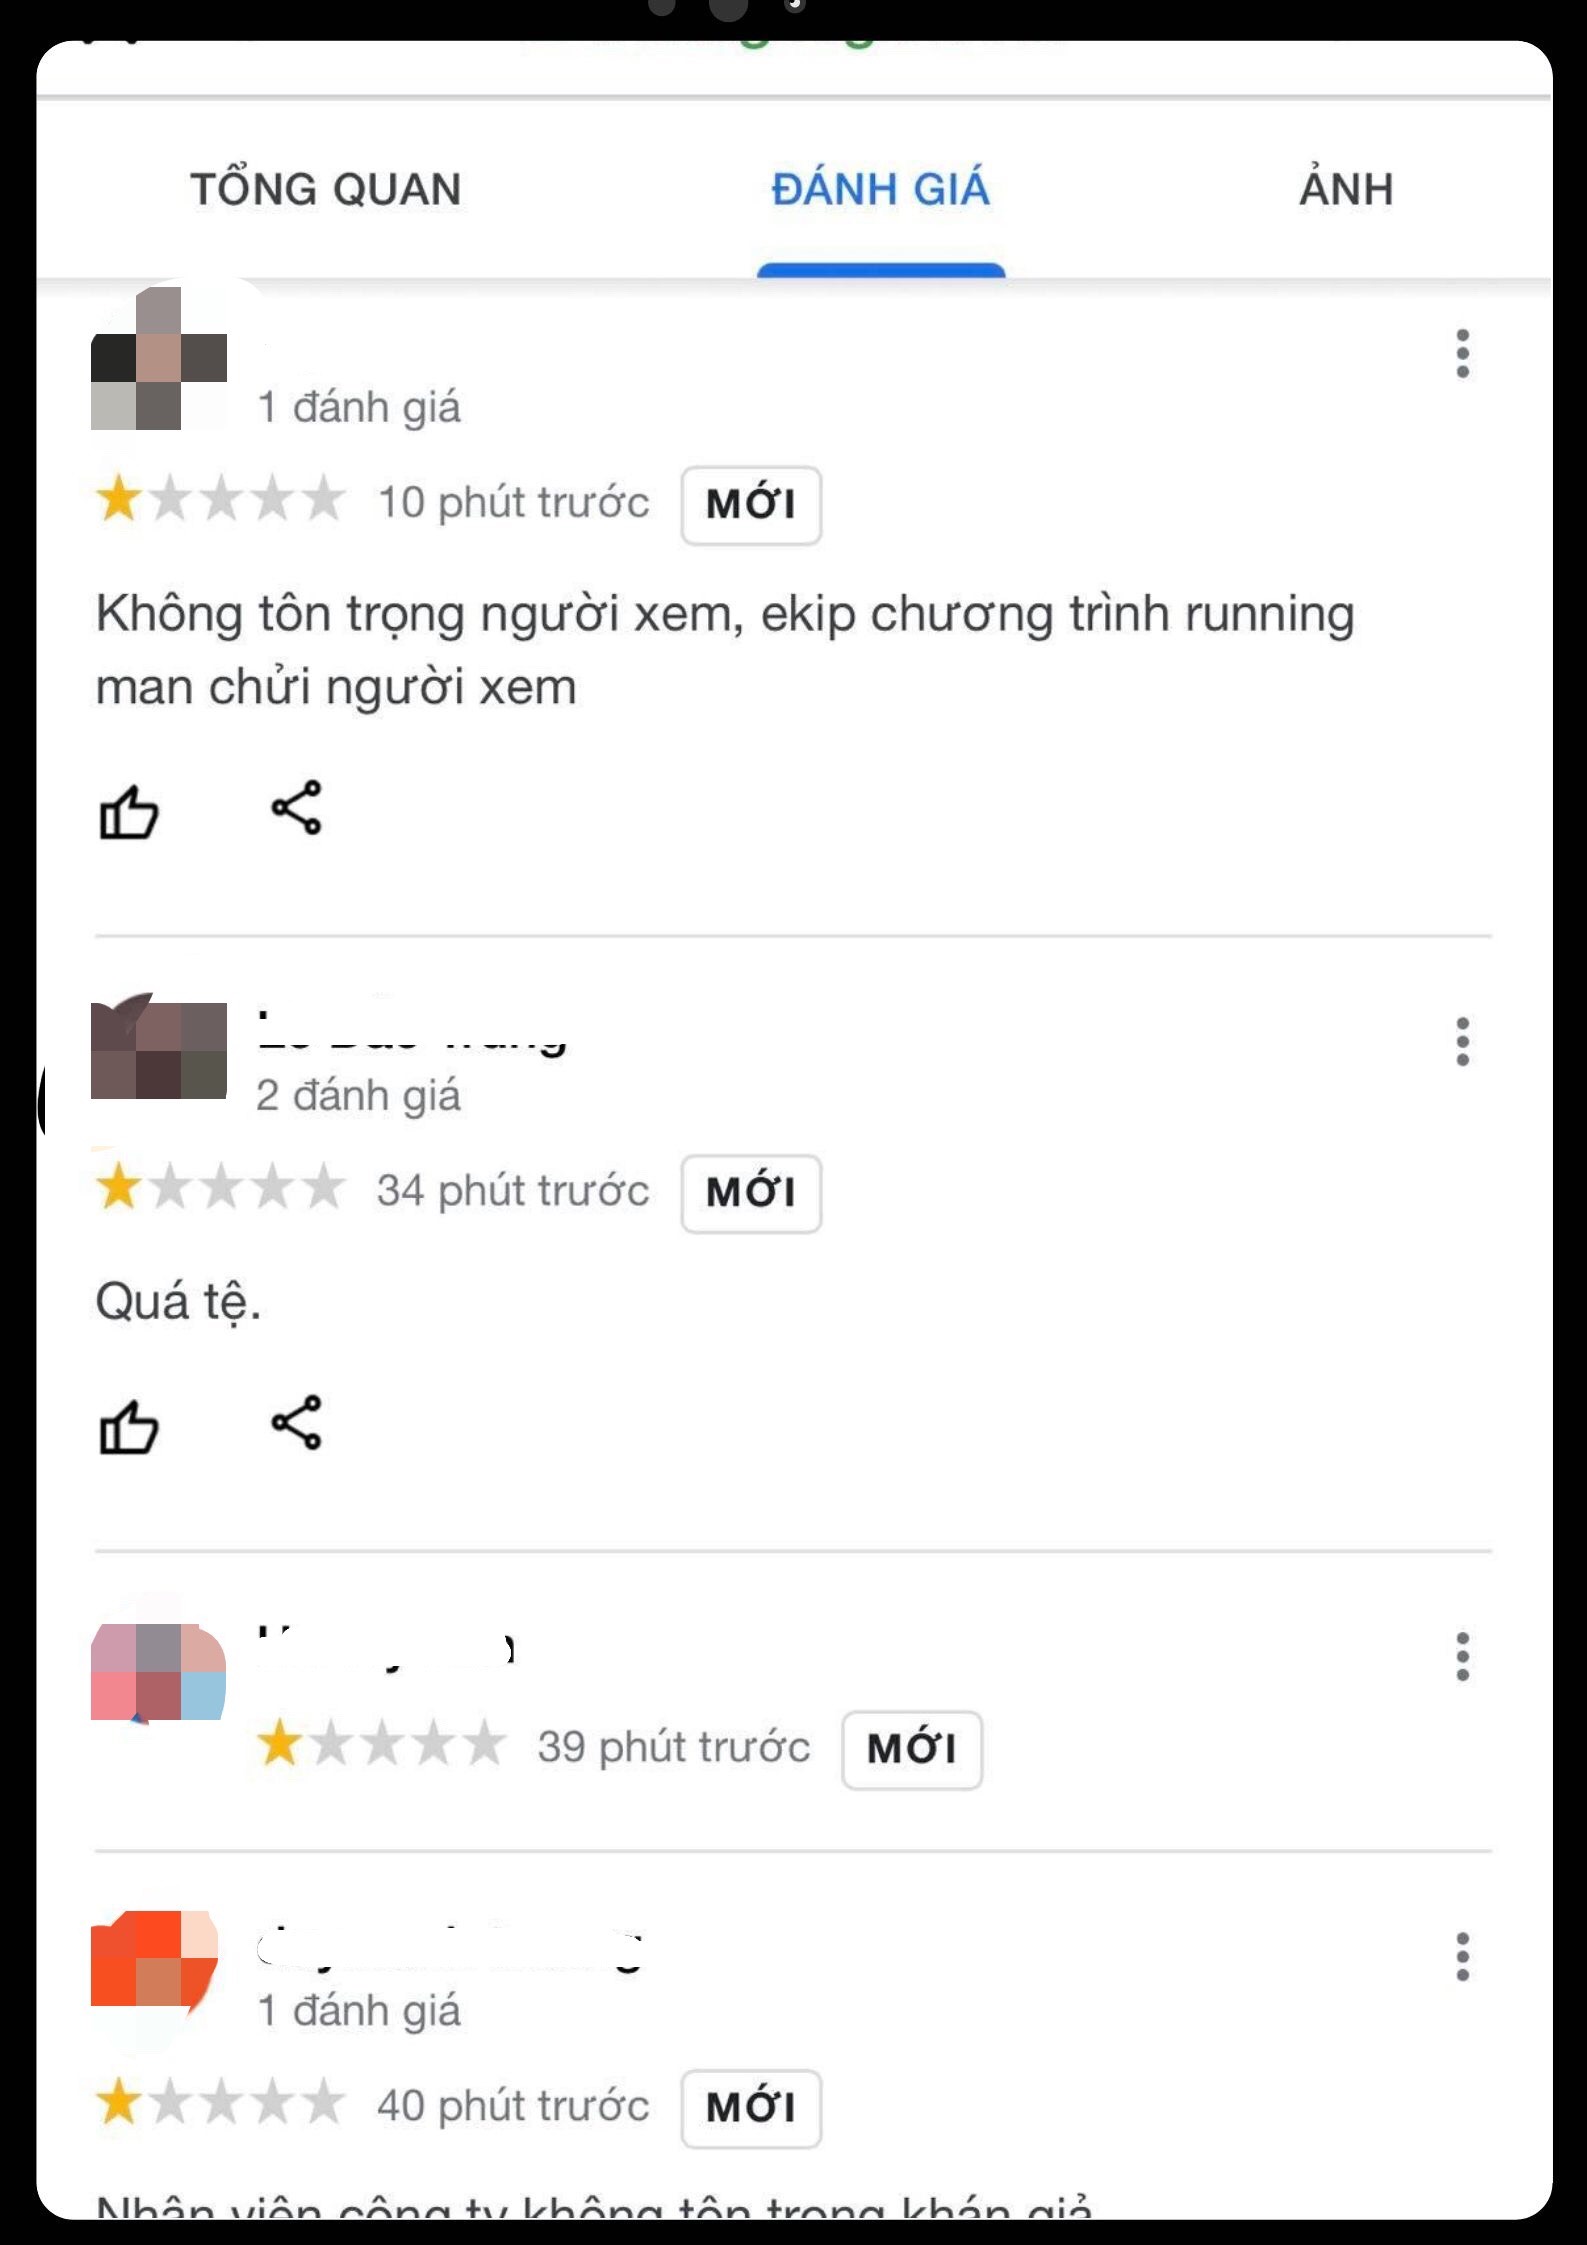 Dân mạng đồng loạt vote 1 sao cho page của công ty sản xuất Running Man tại Việt Nam sau khi bị cho là có phát ngôn chửi khán giả là chó”-5